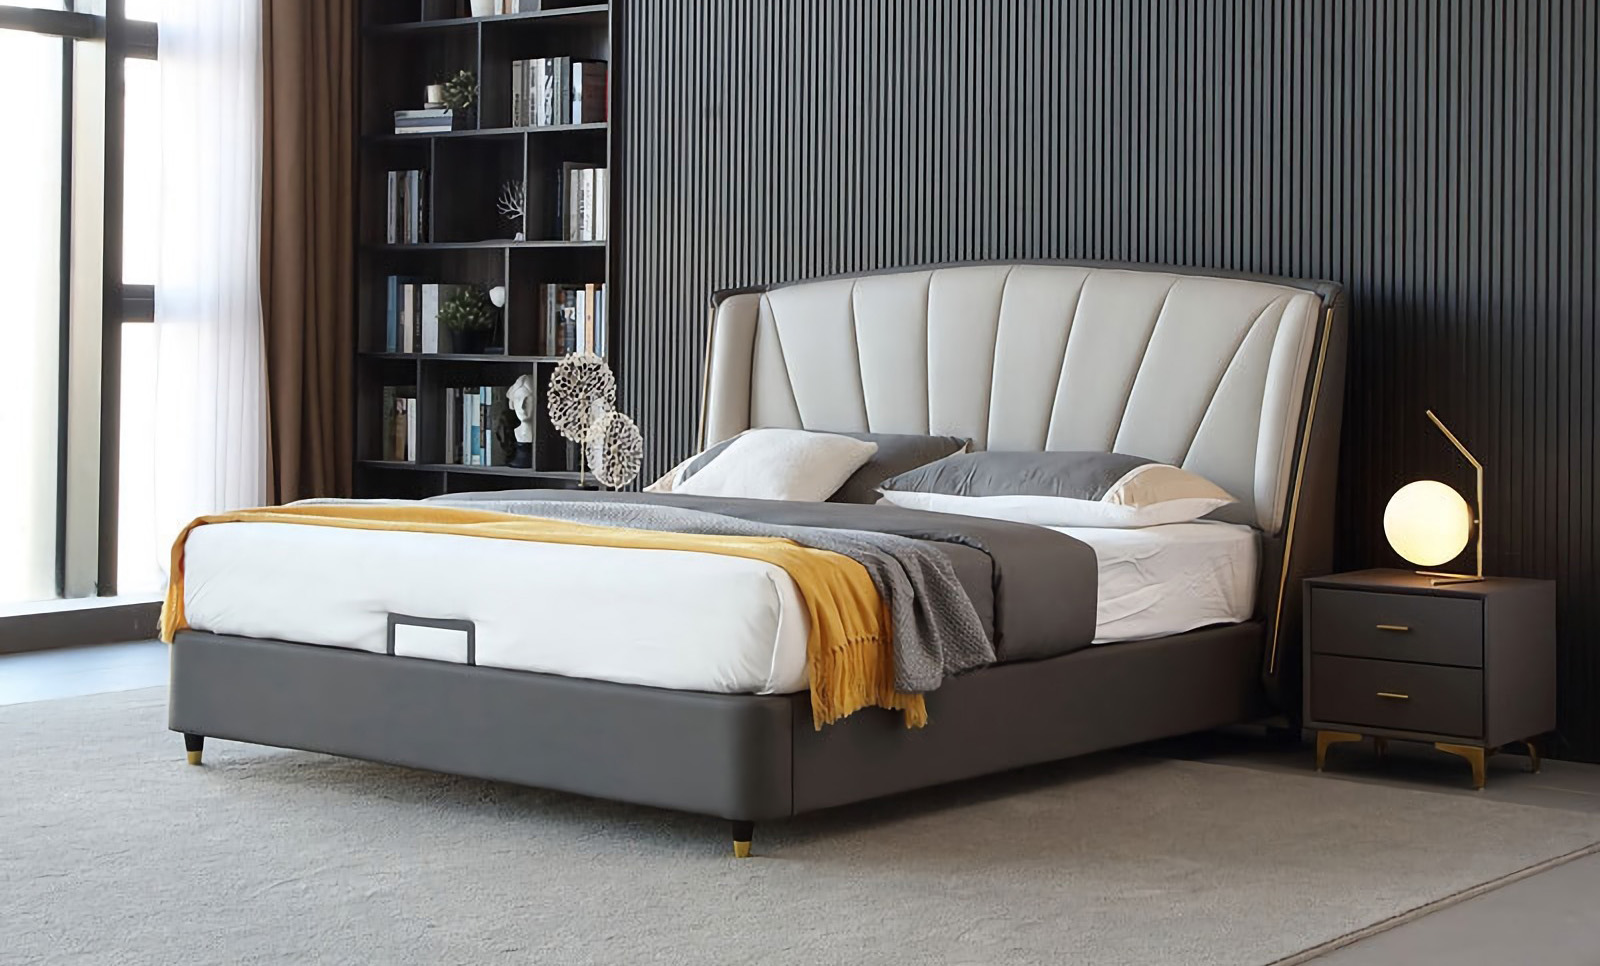 Nowoczesna minimalistyczna konstrukcja łóżka Cechy nowoczesnego minimalistycznego łóżka.